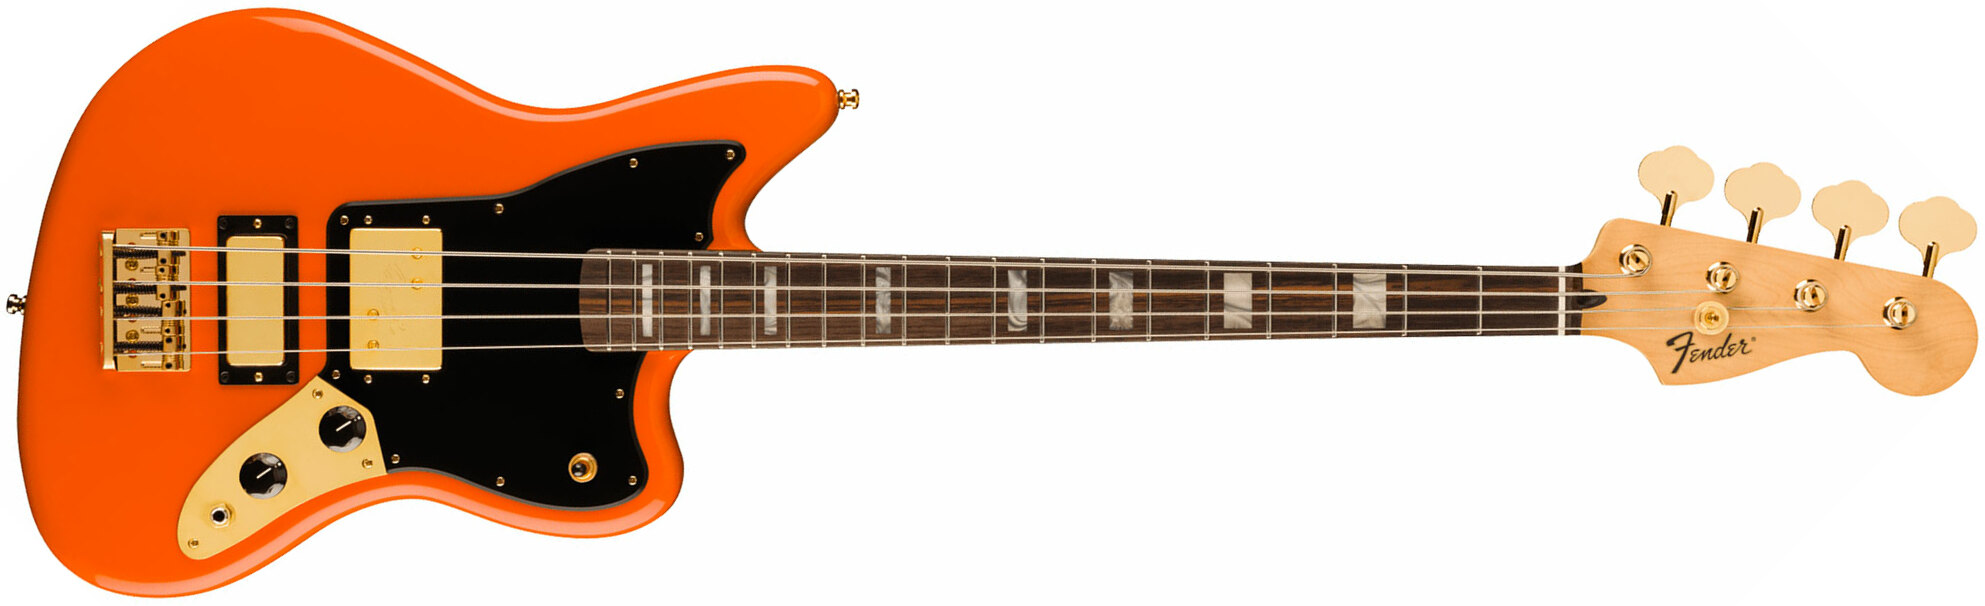 Fender Mike Kerr Jaguar Ltd Mex Signature Rw - Tiger's Blood Orange - Basse Électrique Solid Body - Main picture